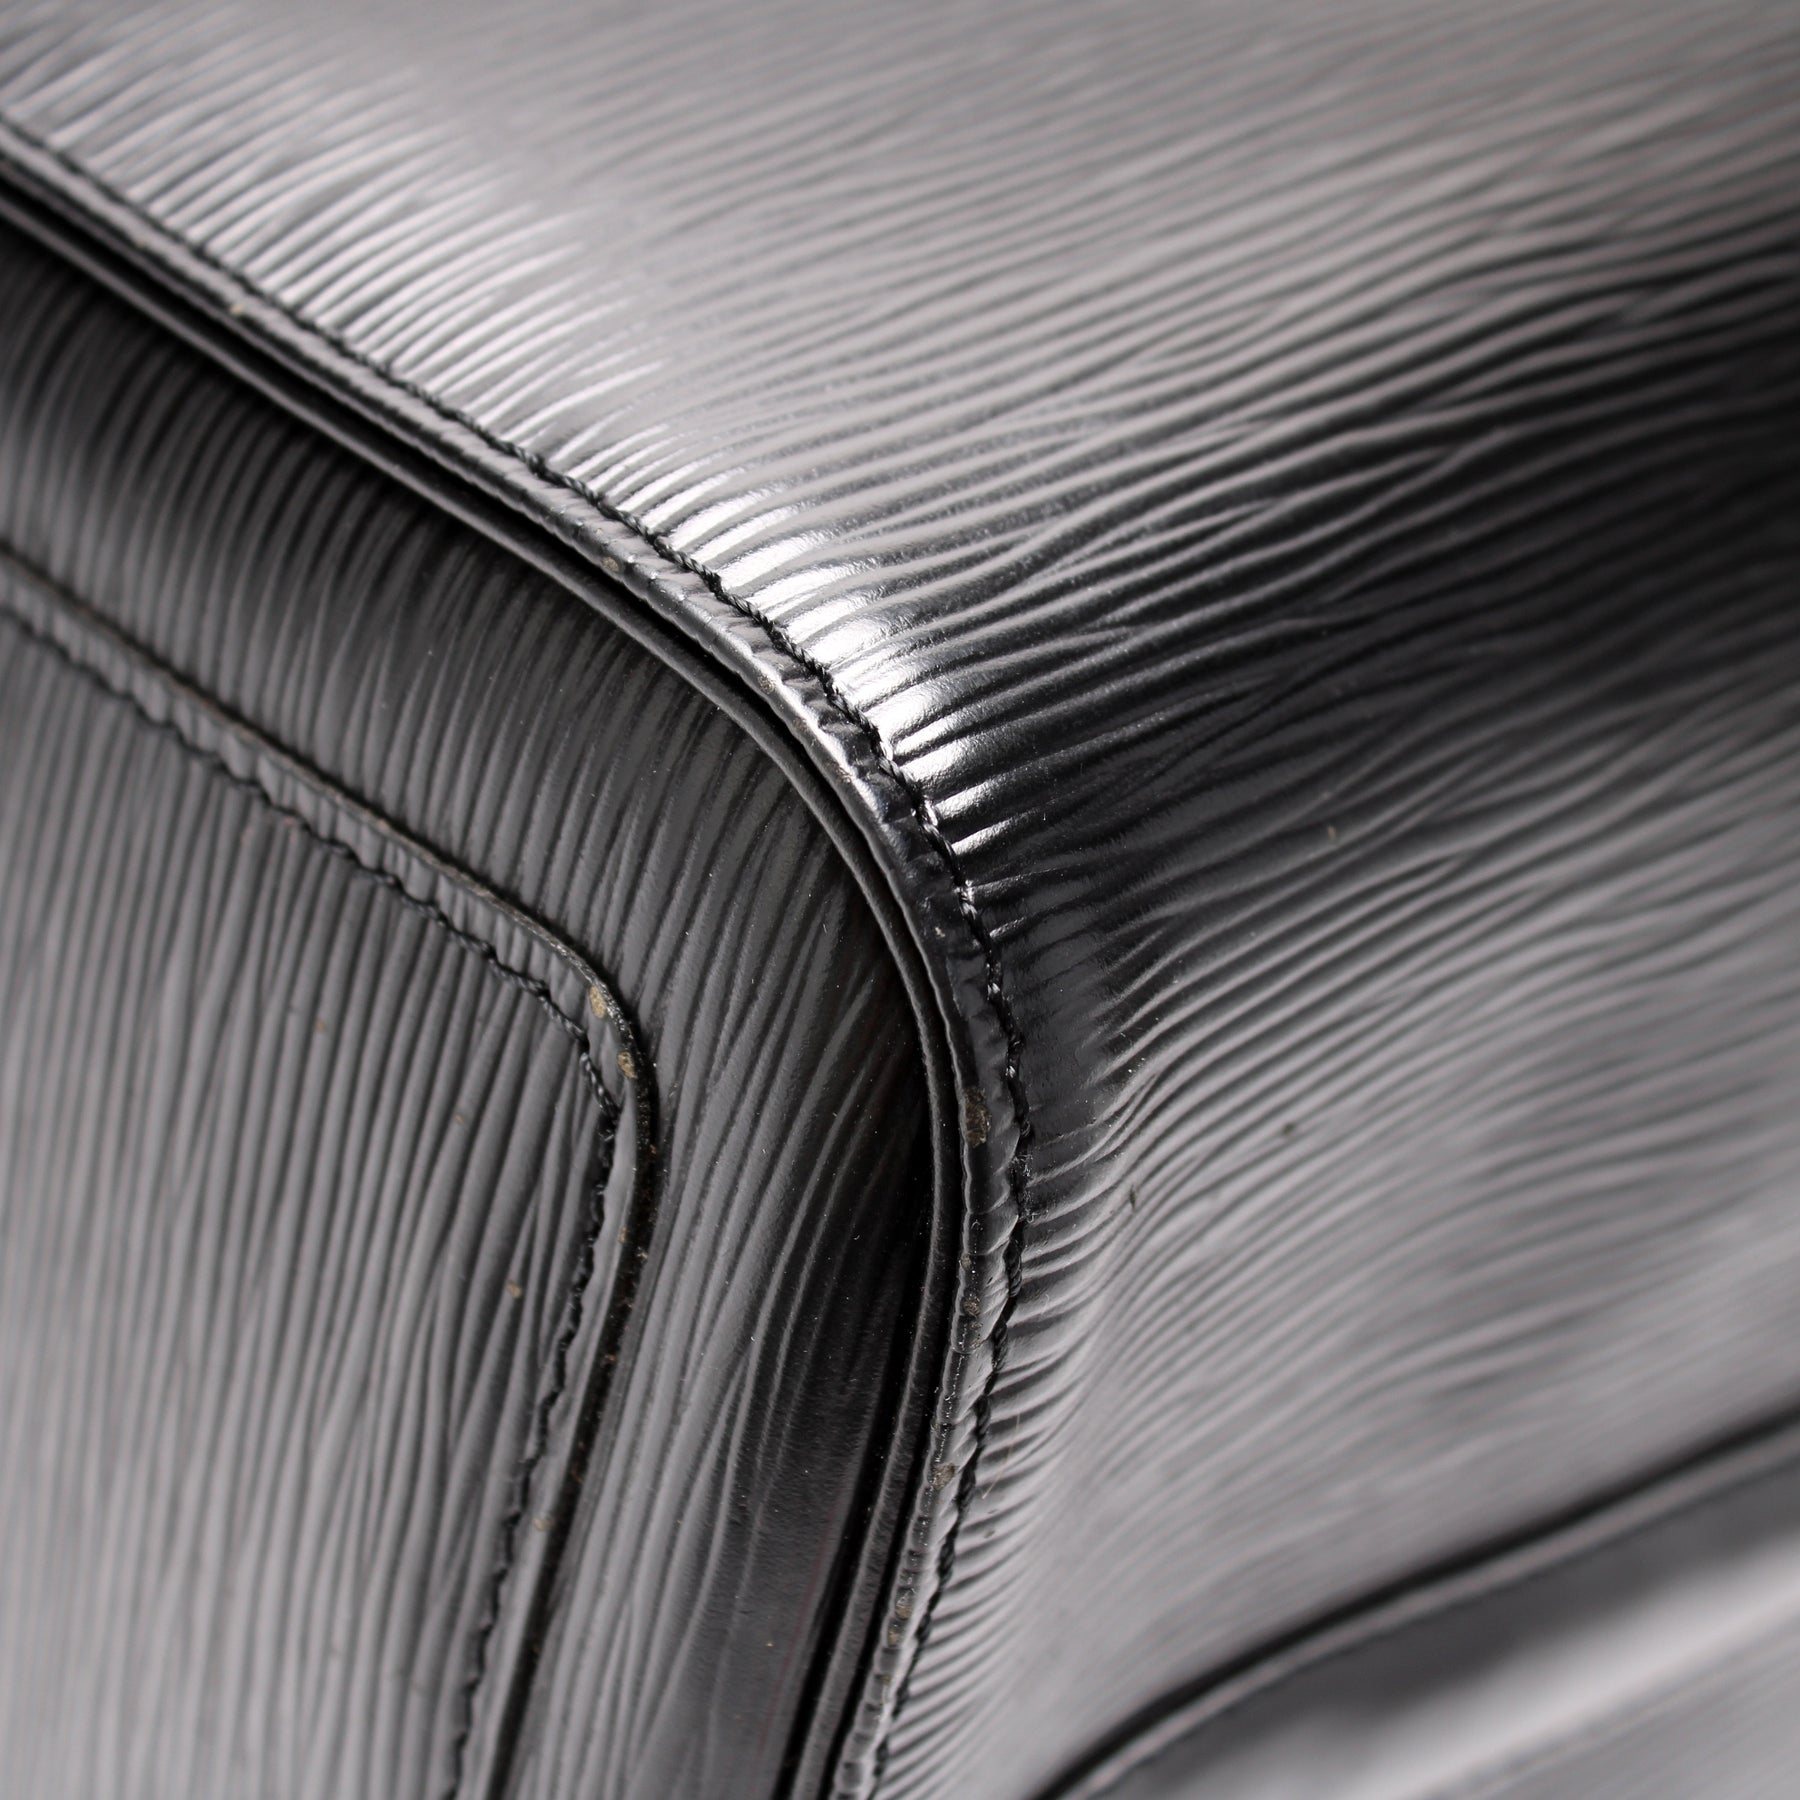 Louis Vuitton Black Epi Leather Speedy 30 - 2 For Sale on 1stDibs